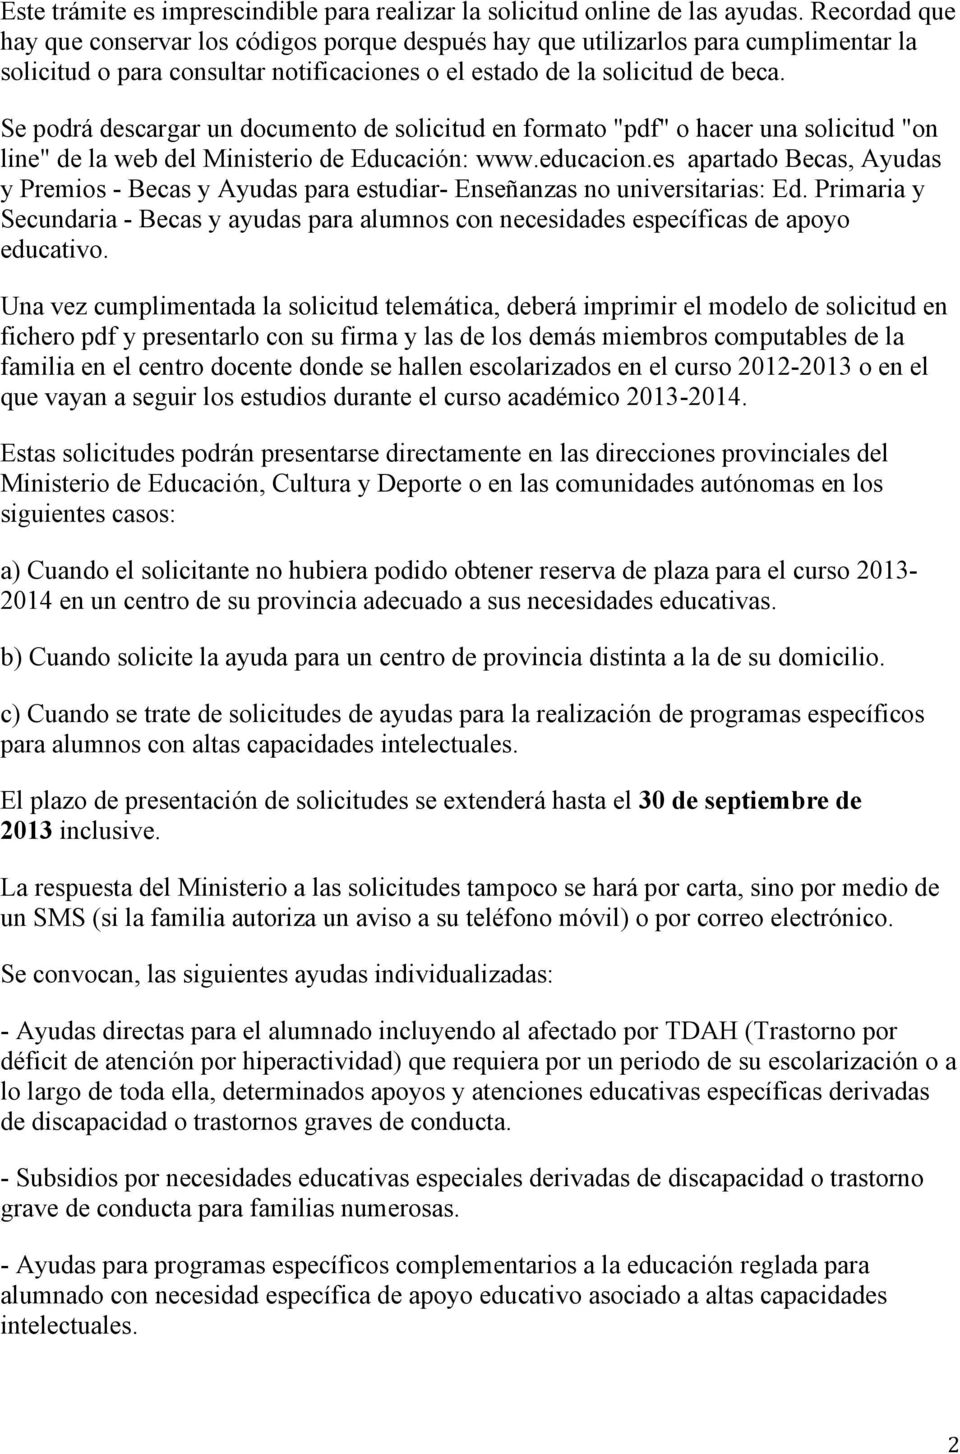 Se podrá descargar un documento de solicitud en formato "pdf" o hacer una solicitud "on line" de la web del Ministerio de Educación: www.educacion.